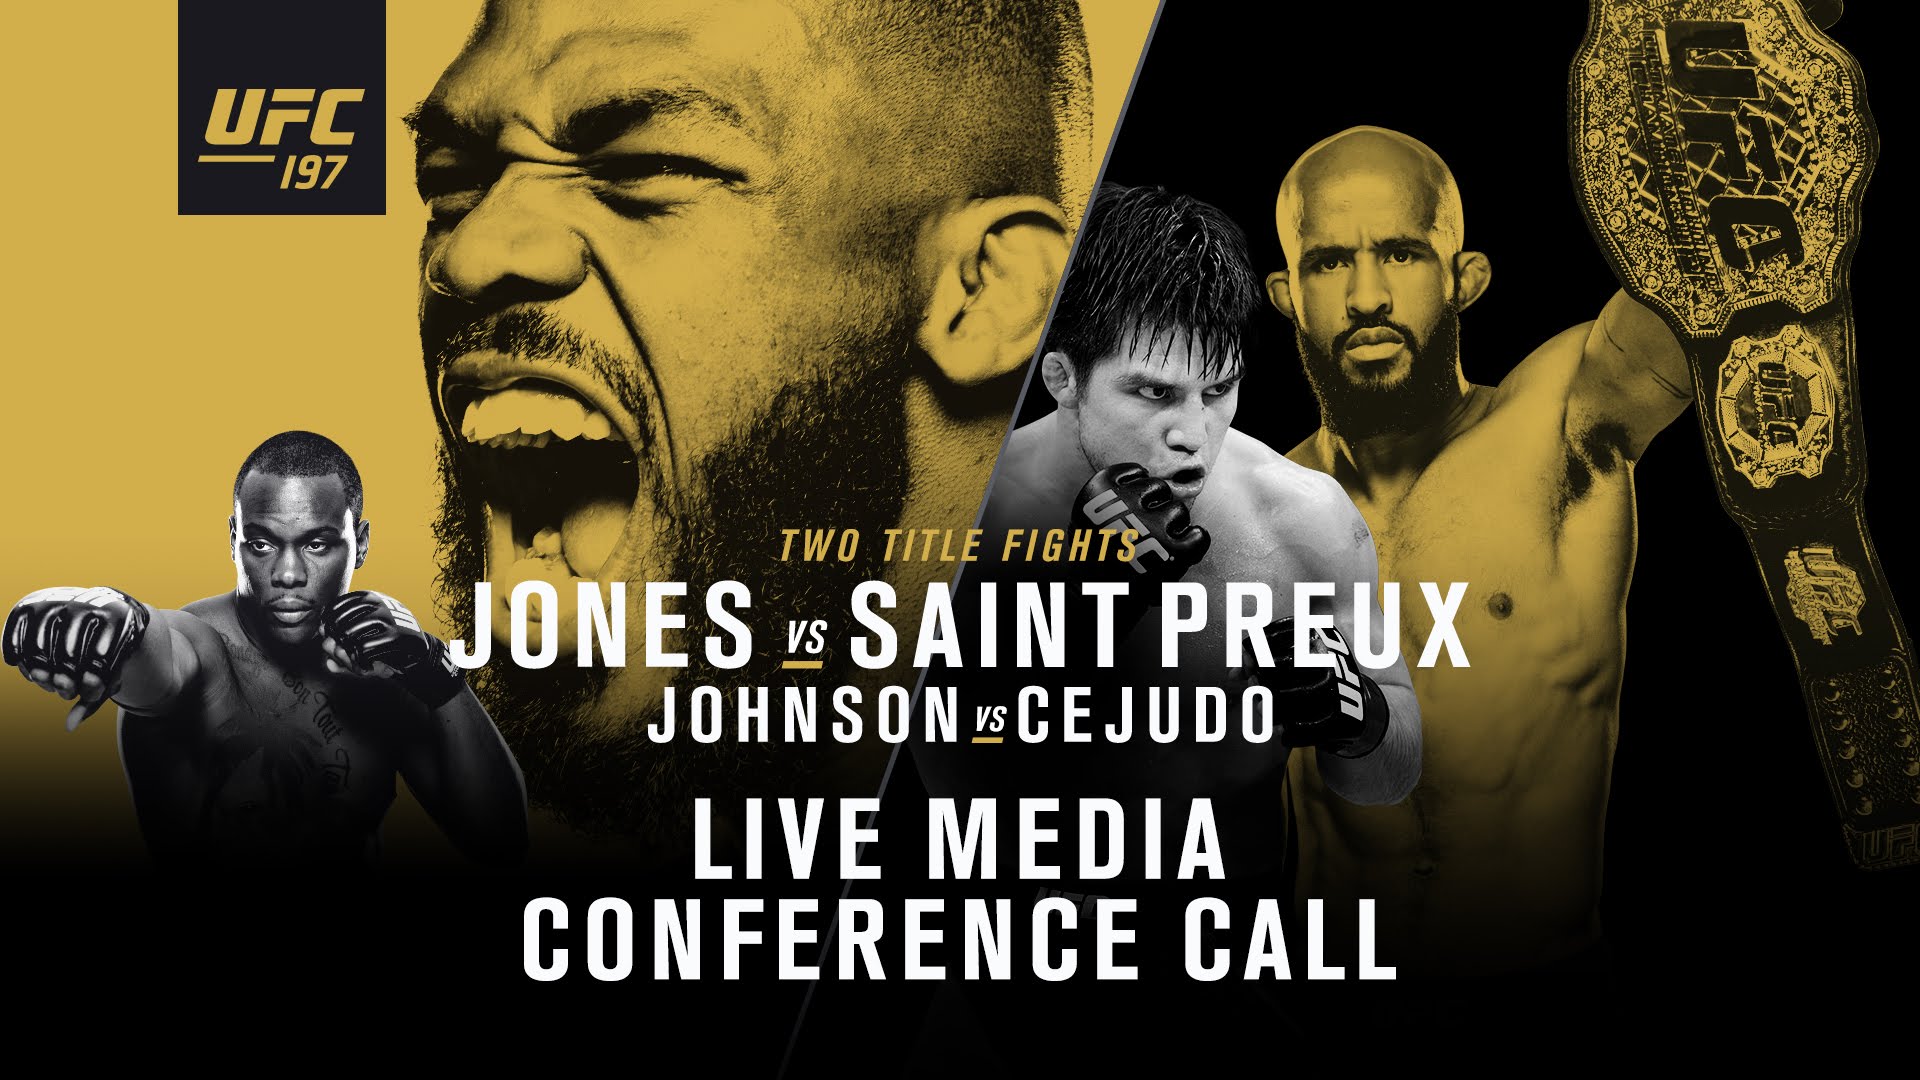 (ПРЕВЬЮ) UFC 197: Джон Джонс - Овинс Сент-Прю, Деметриус Джонсон - Генри Сехудо, Энтони Петтис - Эдсон Барбоза